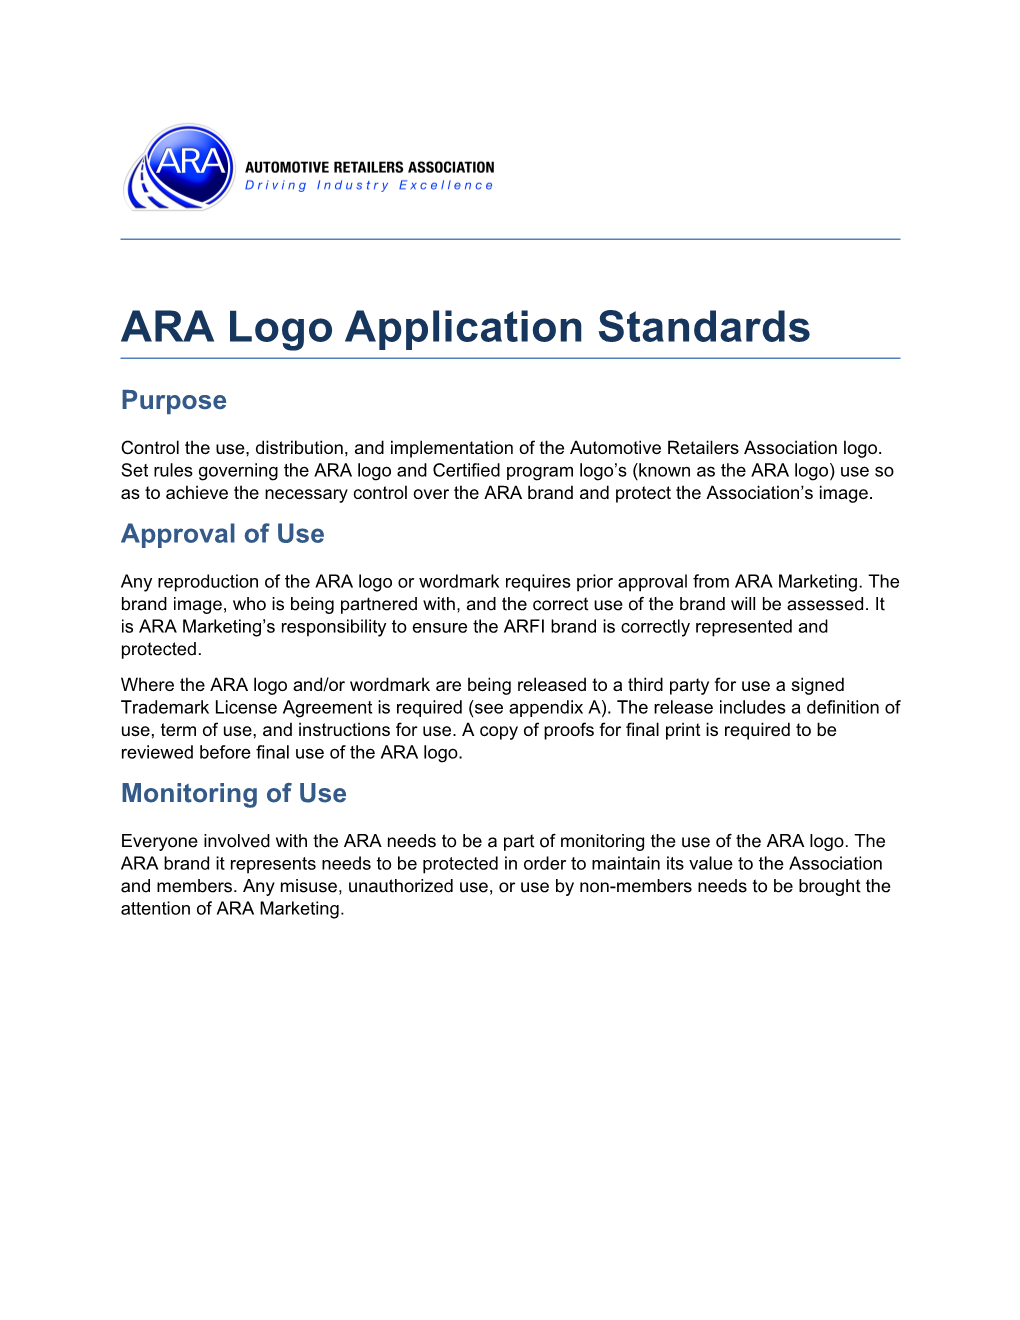 ARA Logo Application Standards